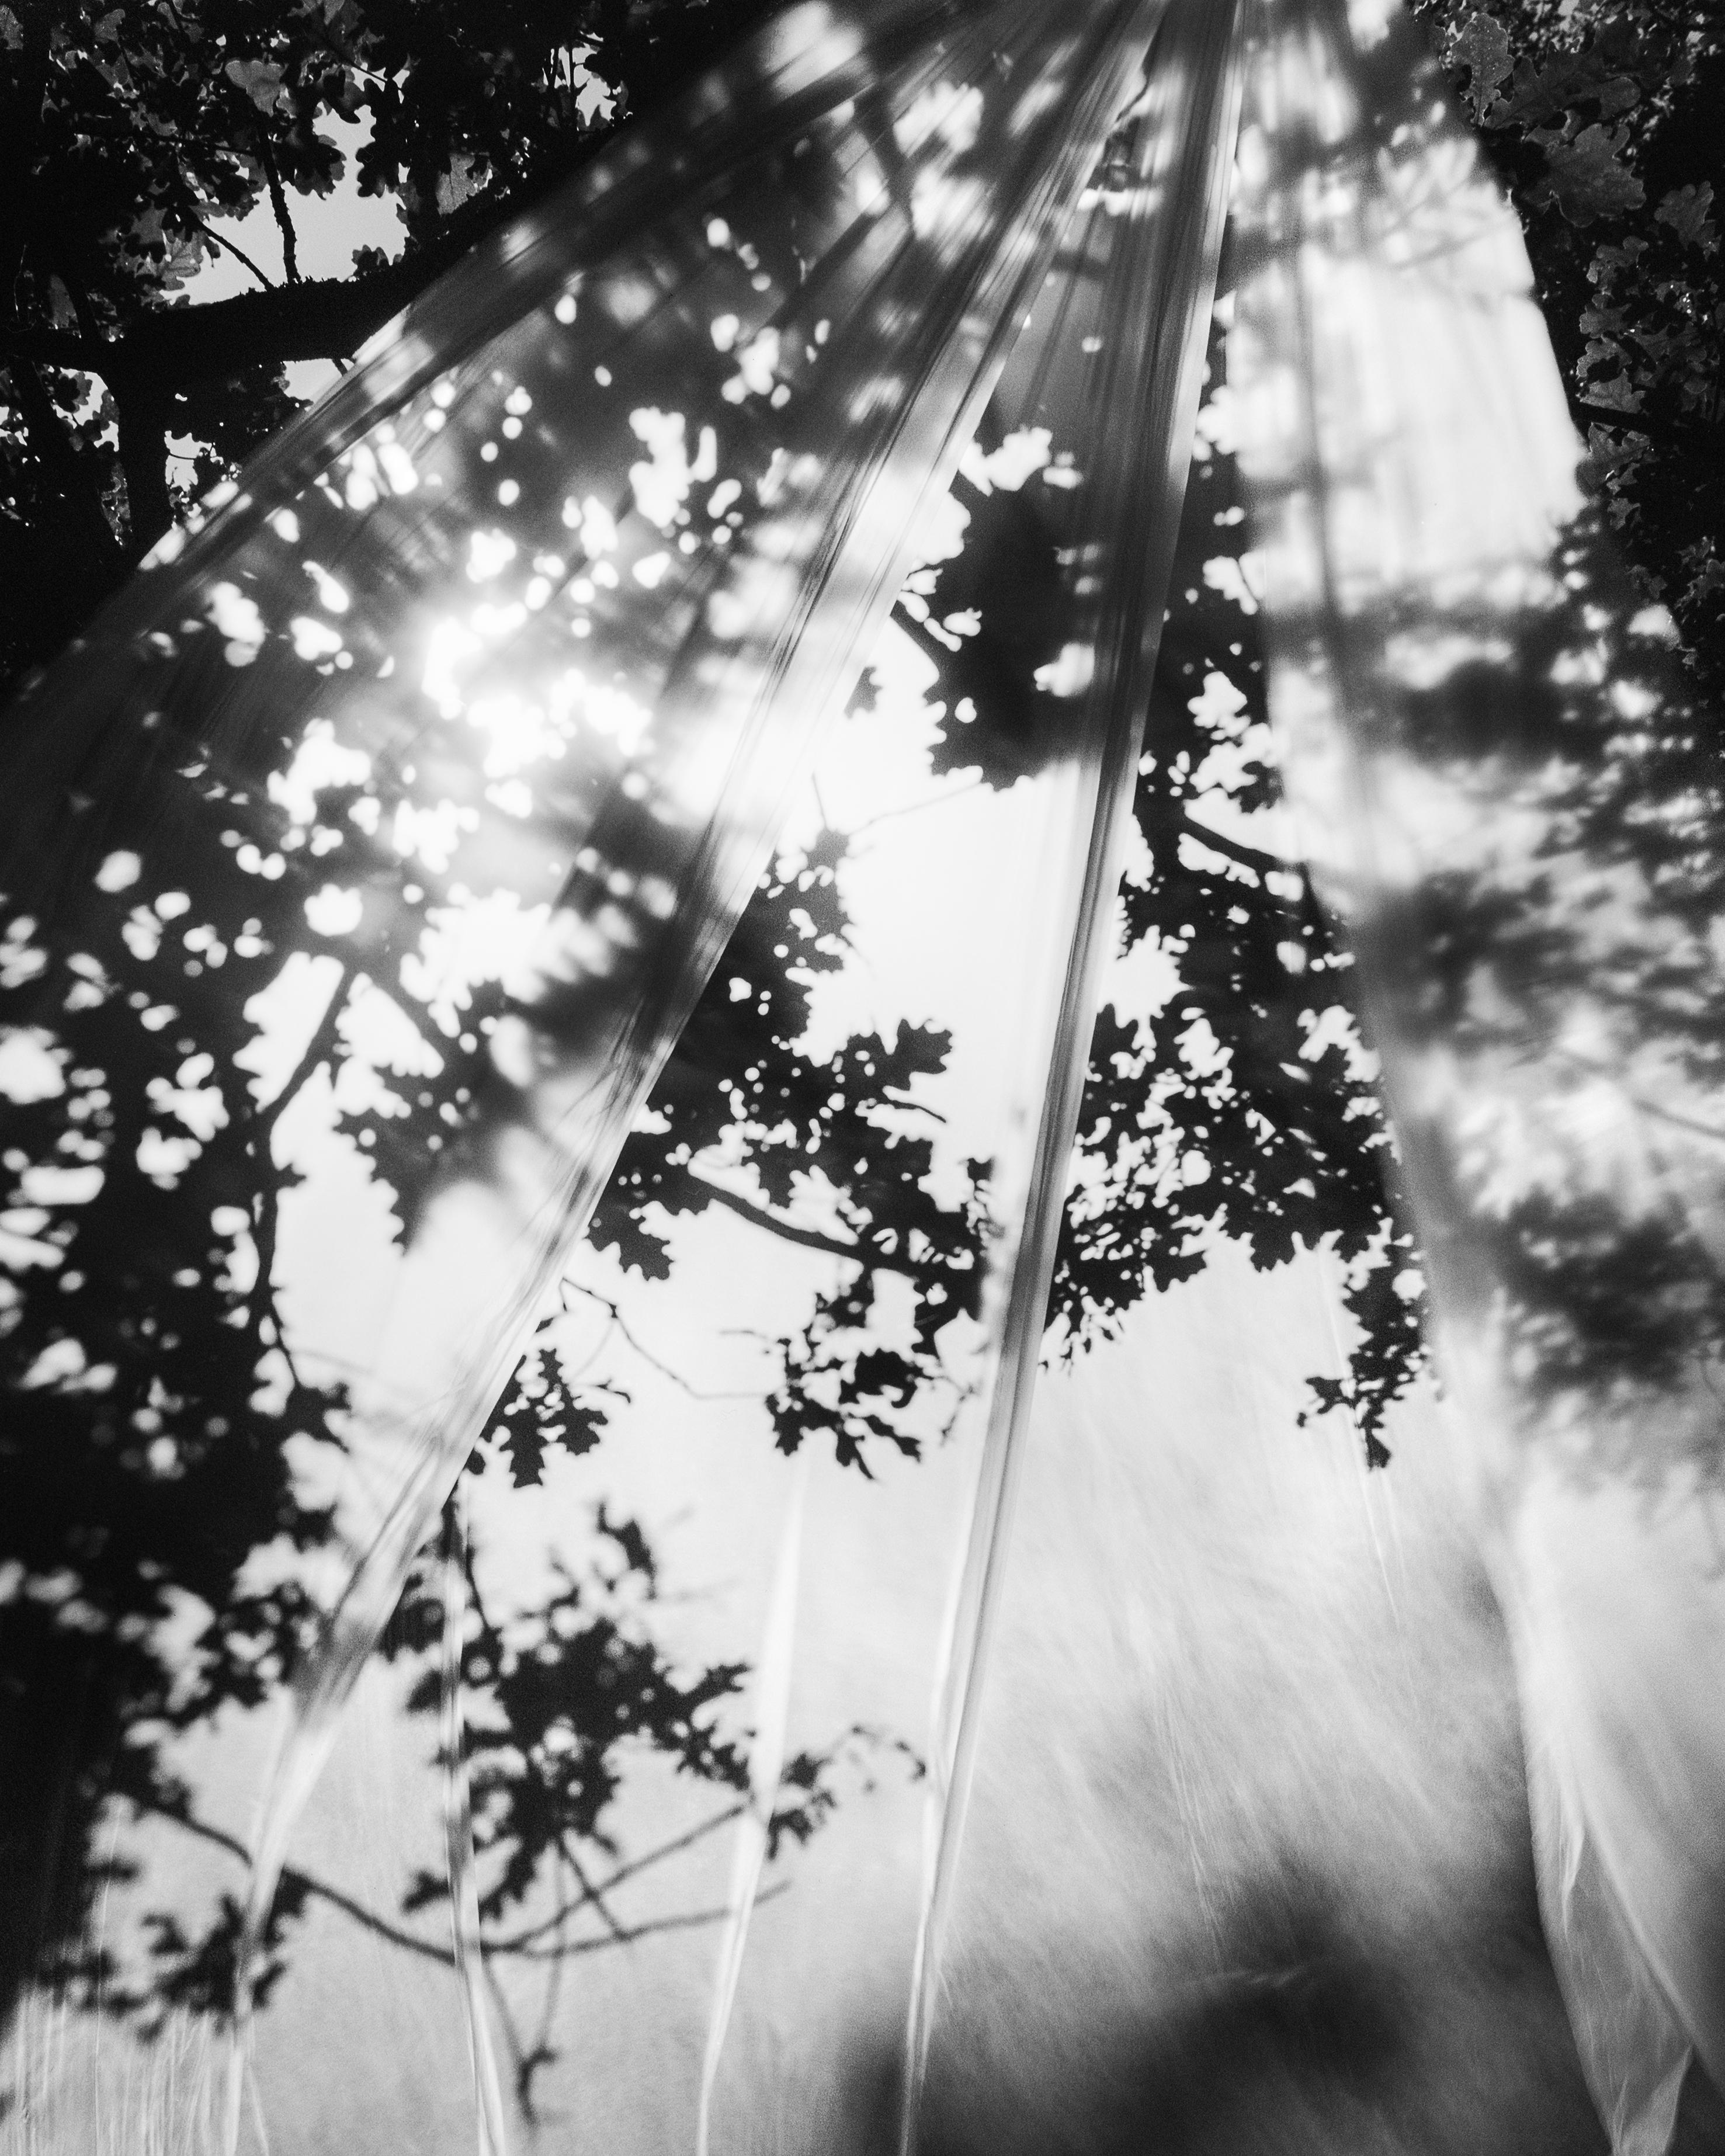 Daydream - photographie de paysage en noir et blanc Édition limitée à 20 exemplaires